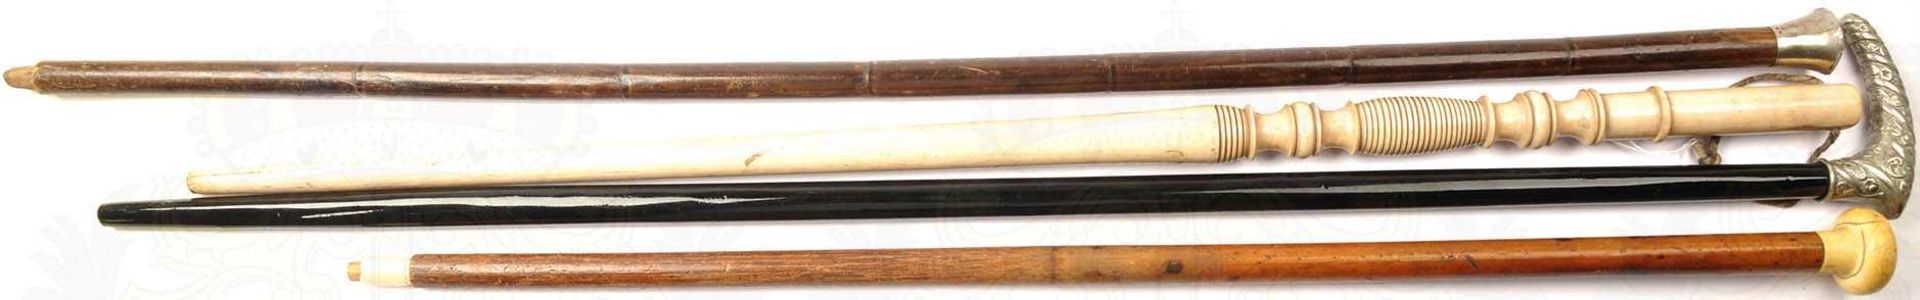 4 GEHSTÖCKE, versch. Holzsorten, 1x gedrechselt, L. 75-90 cm, 2 vernickelte Knäufe, davon jew. 1x